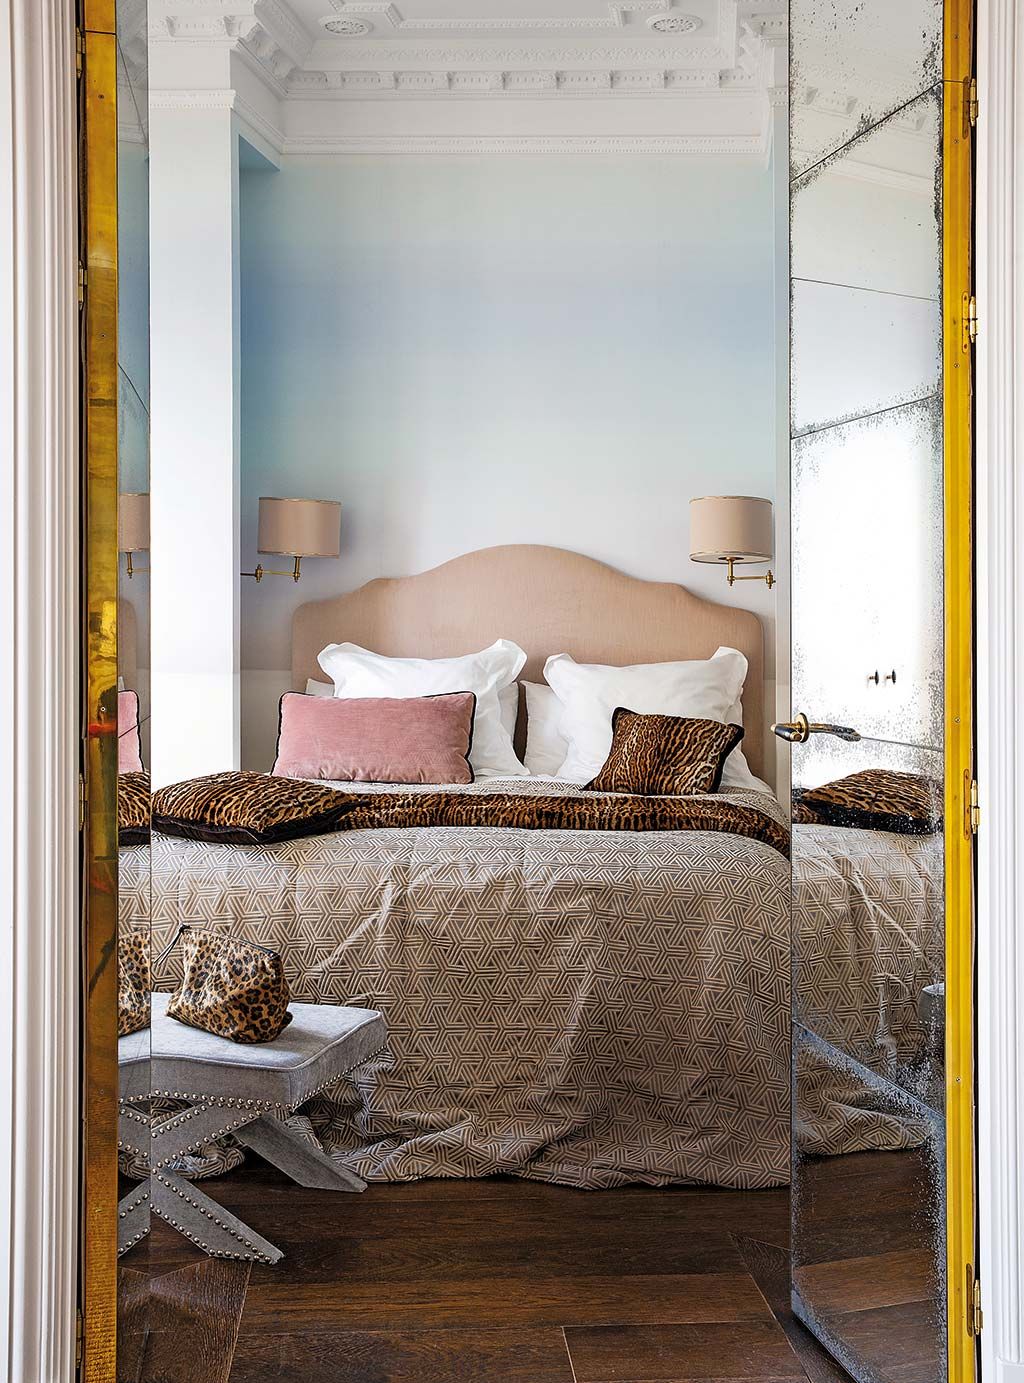 Haz tu propio cabecero de madera para renovar el dormitorio - Foto 1